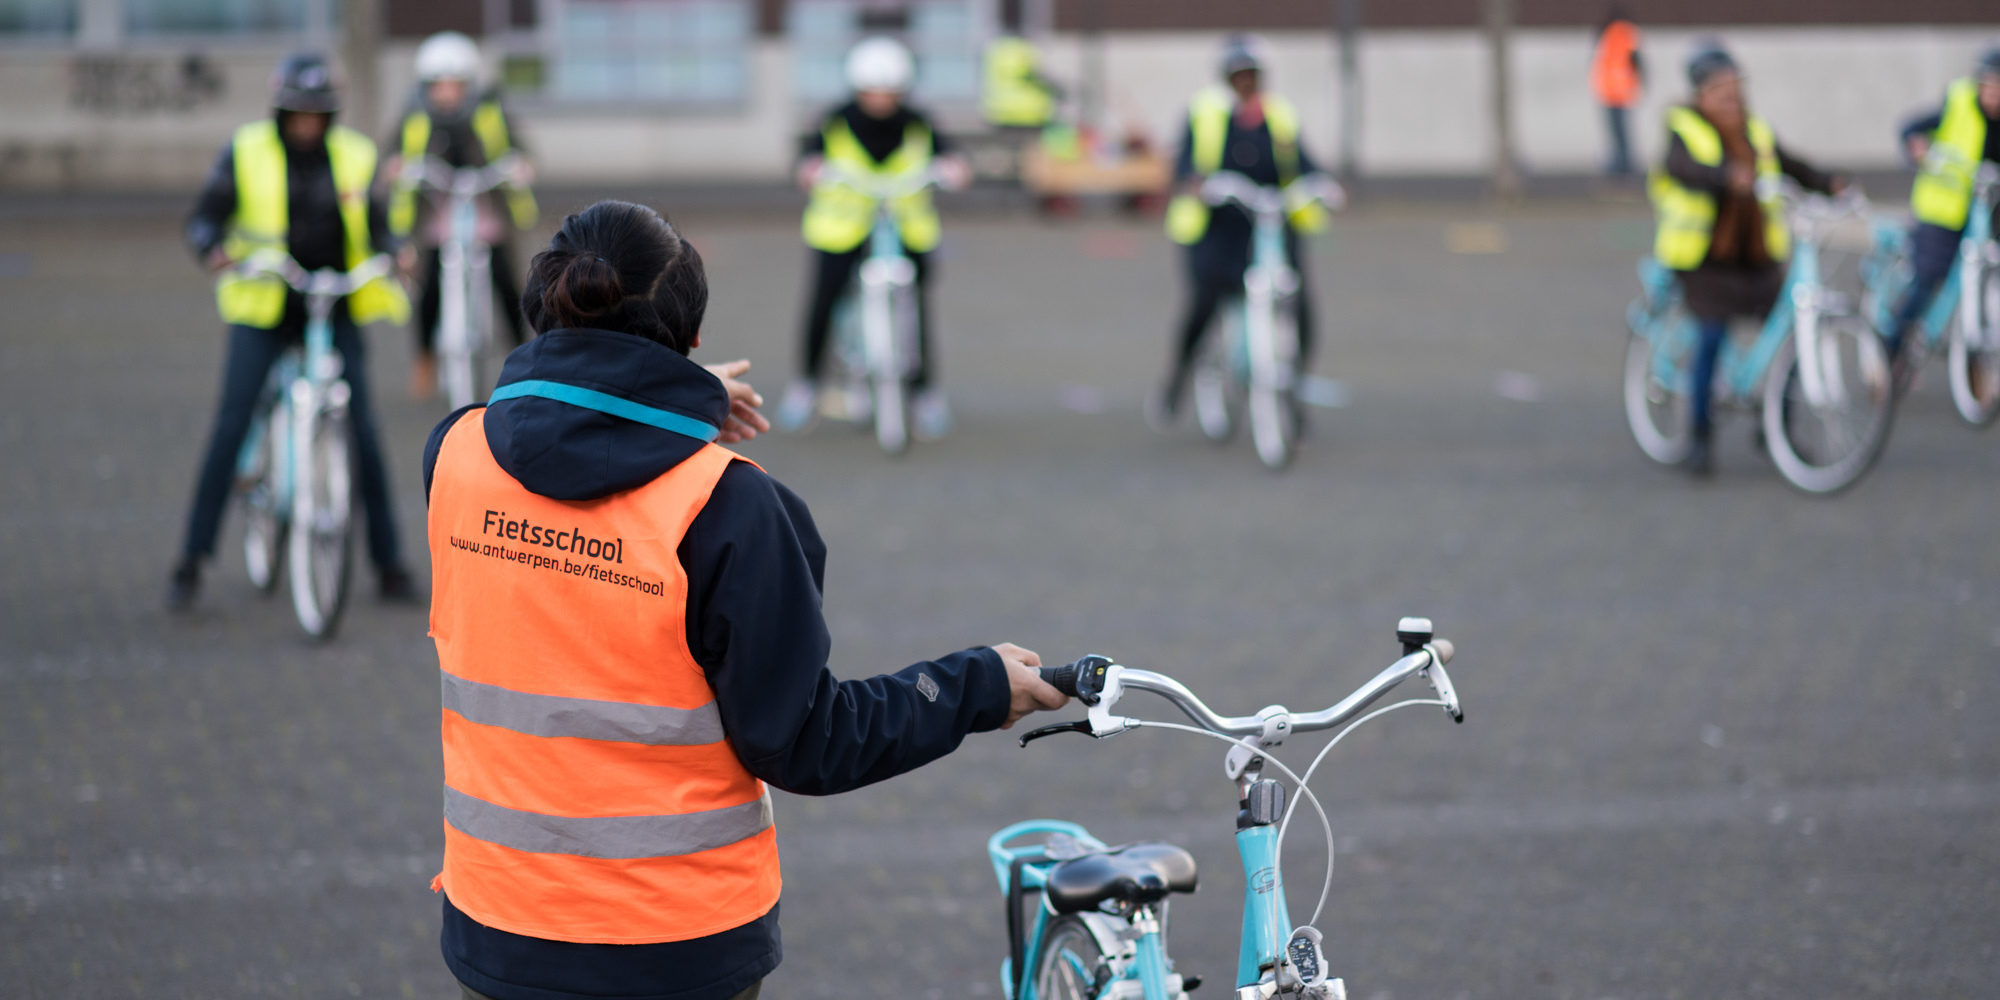 Duiker Gezichtsvermogen Ciro Leer fietsen dankzij de Fietsschool | Antwerpen.be